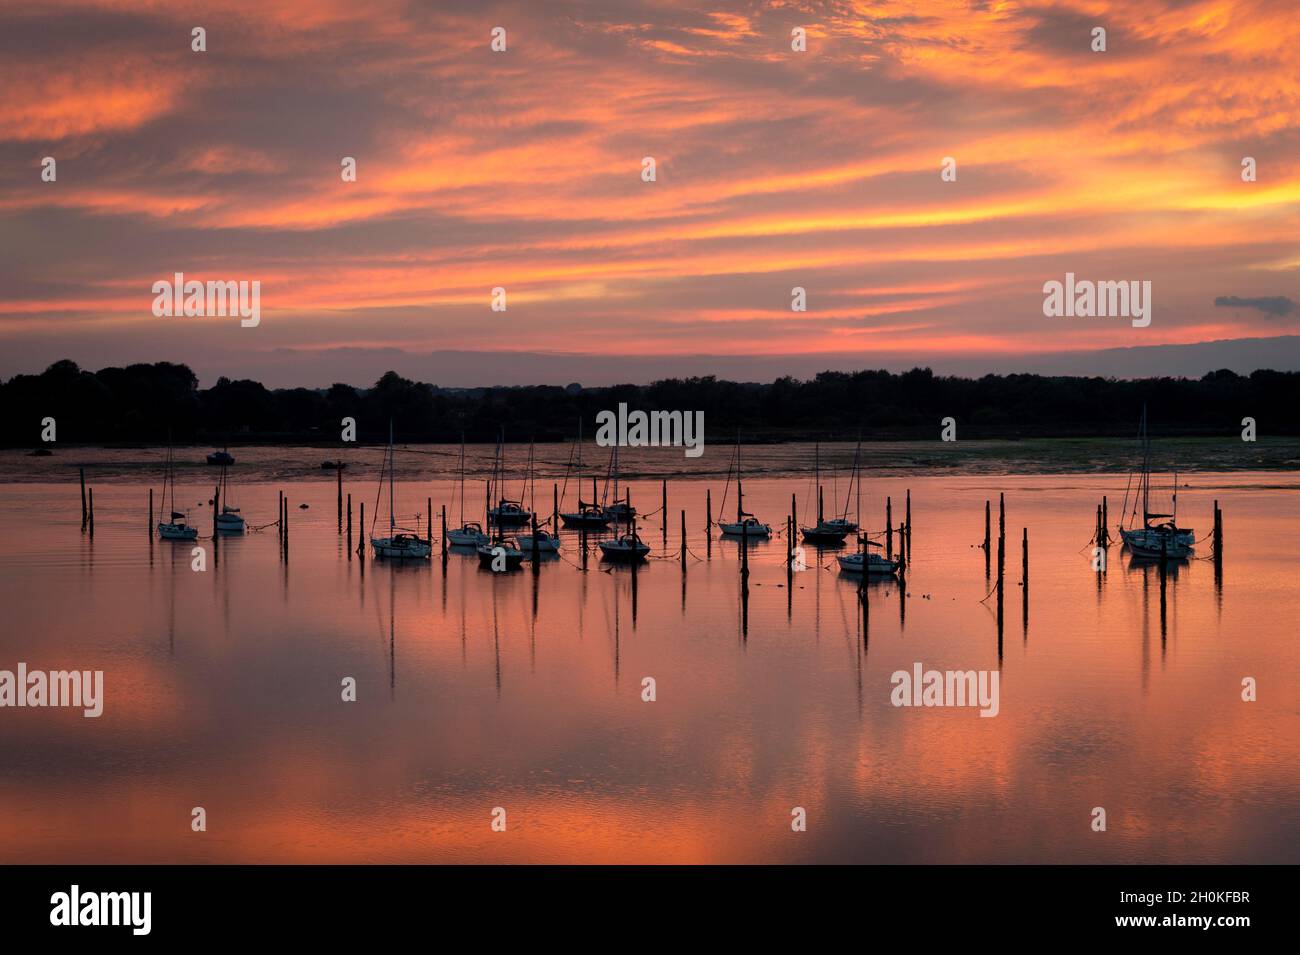 Boote, die auf Pilings in Portchester Reach in Portsmouth Harbour, Hampshire, Großbritannien, festgemacht sind. Sonnenuntergang mit dramatischem orangefarbenem Himmel. Stockfoto